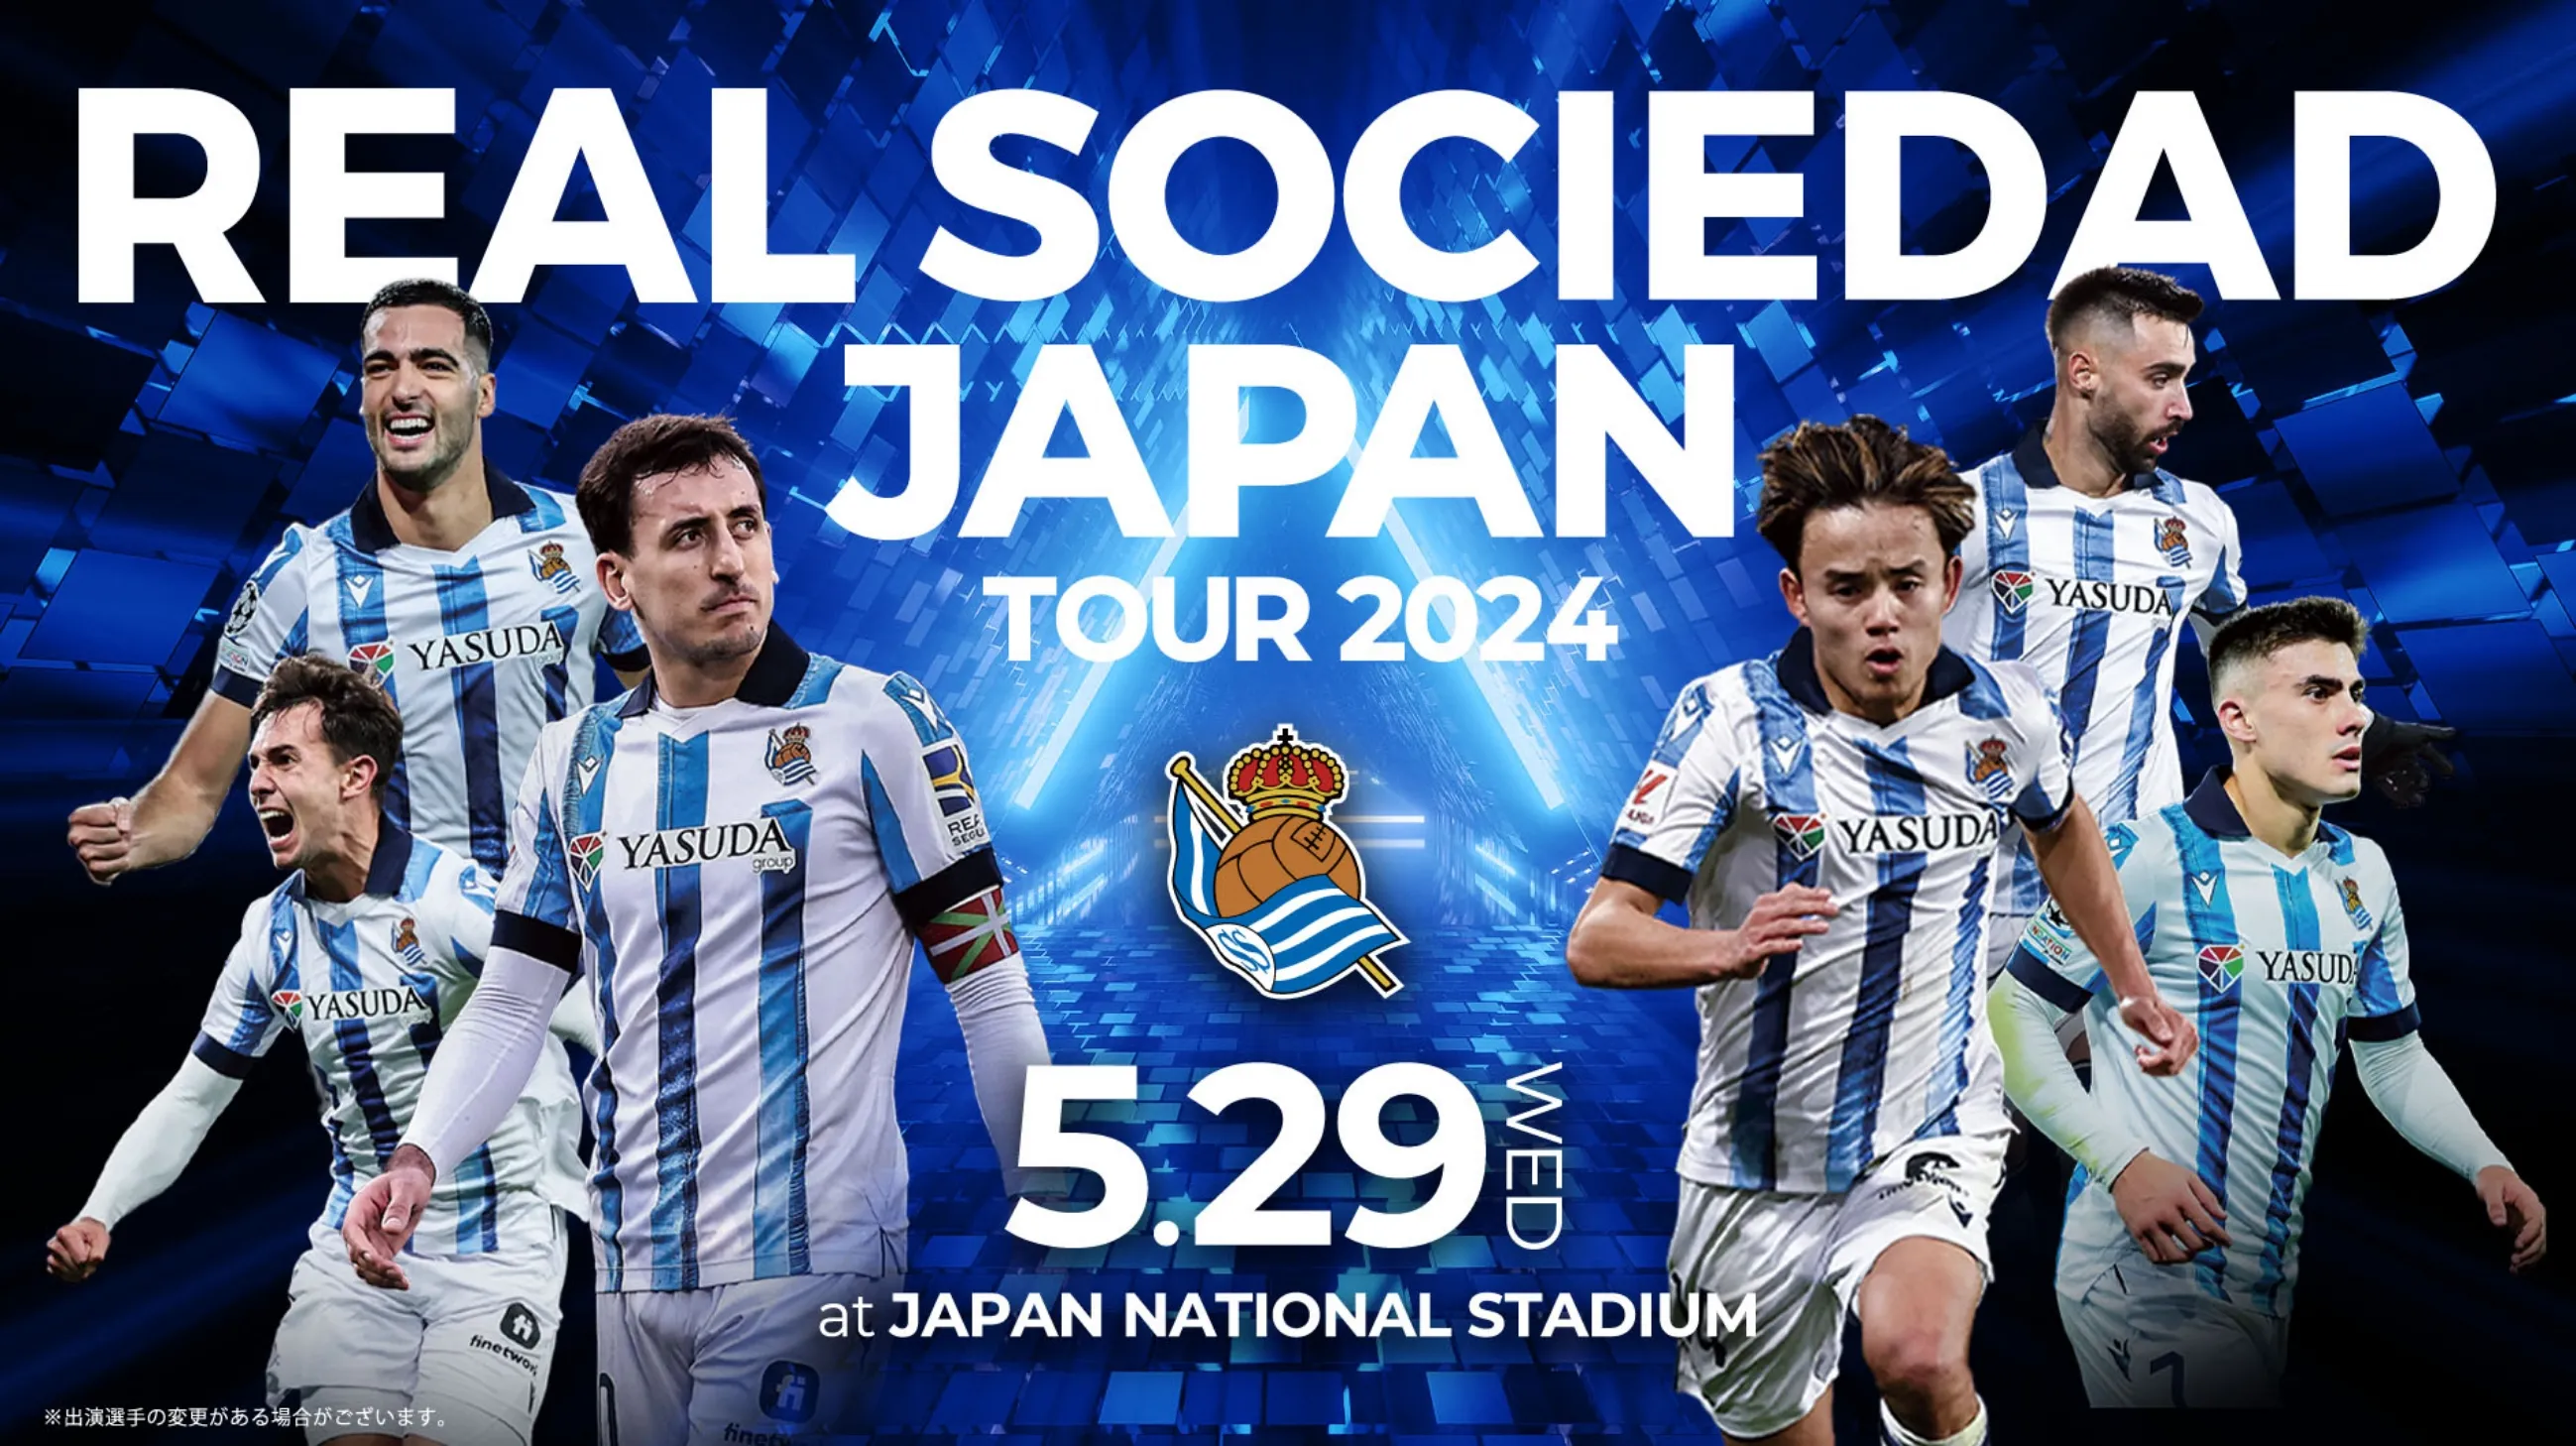 REAL SOCIEDAD JAPAN TOUR 2024 5.29 WED